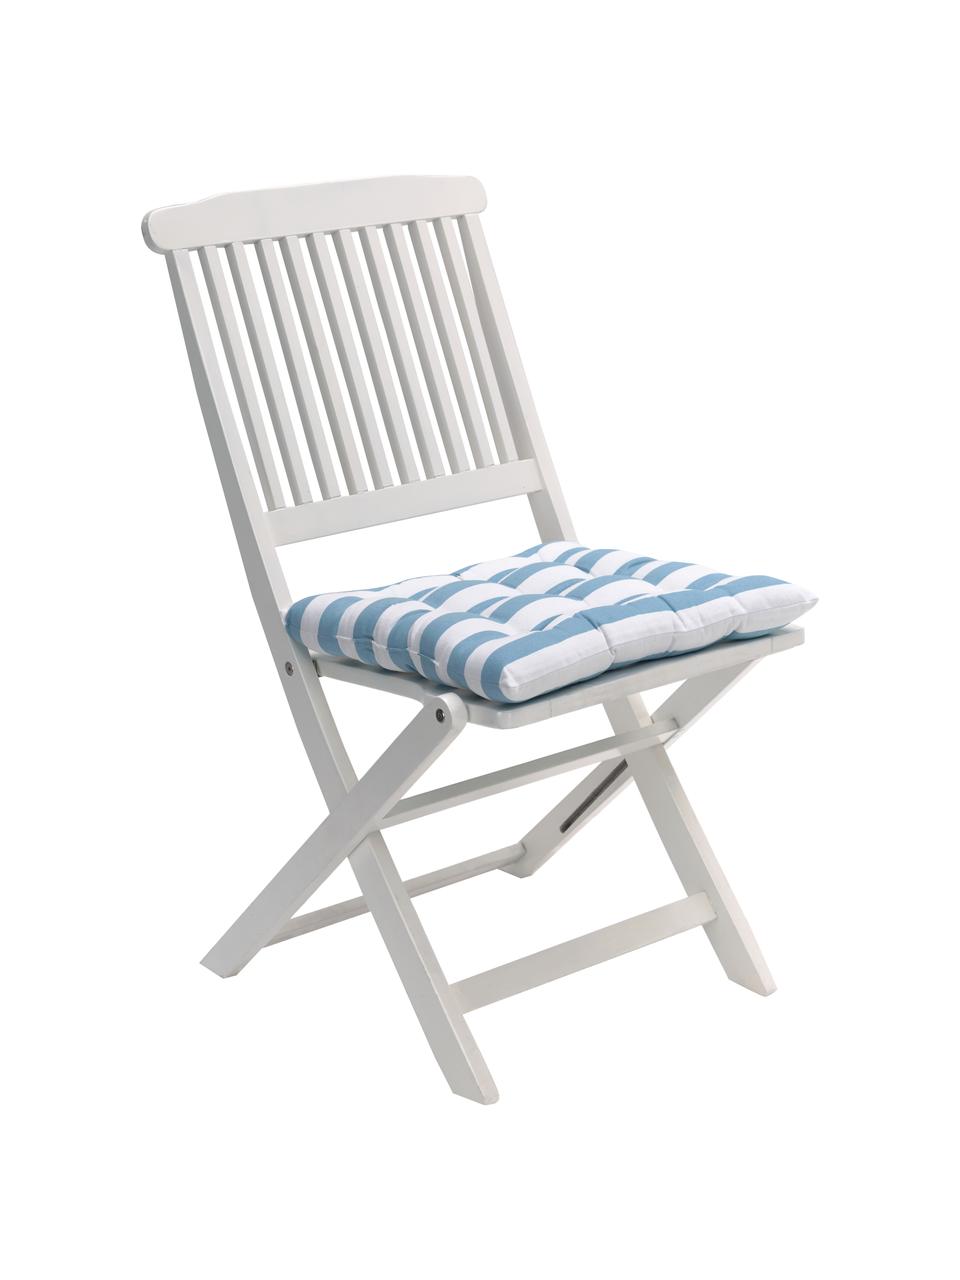 Gestreiftes Sitzkissen Timon in Blau/Weiß, Bezug: 100% Baumwolle, Blau, Weiß, B 40 x L 40 cm